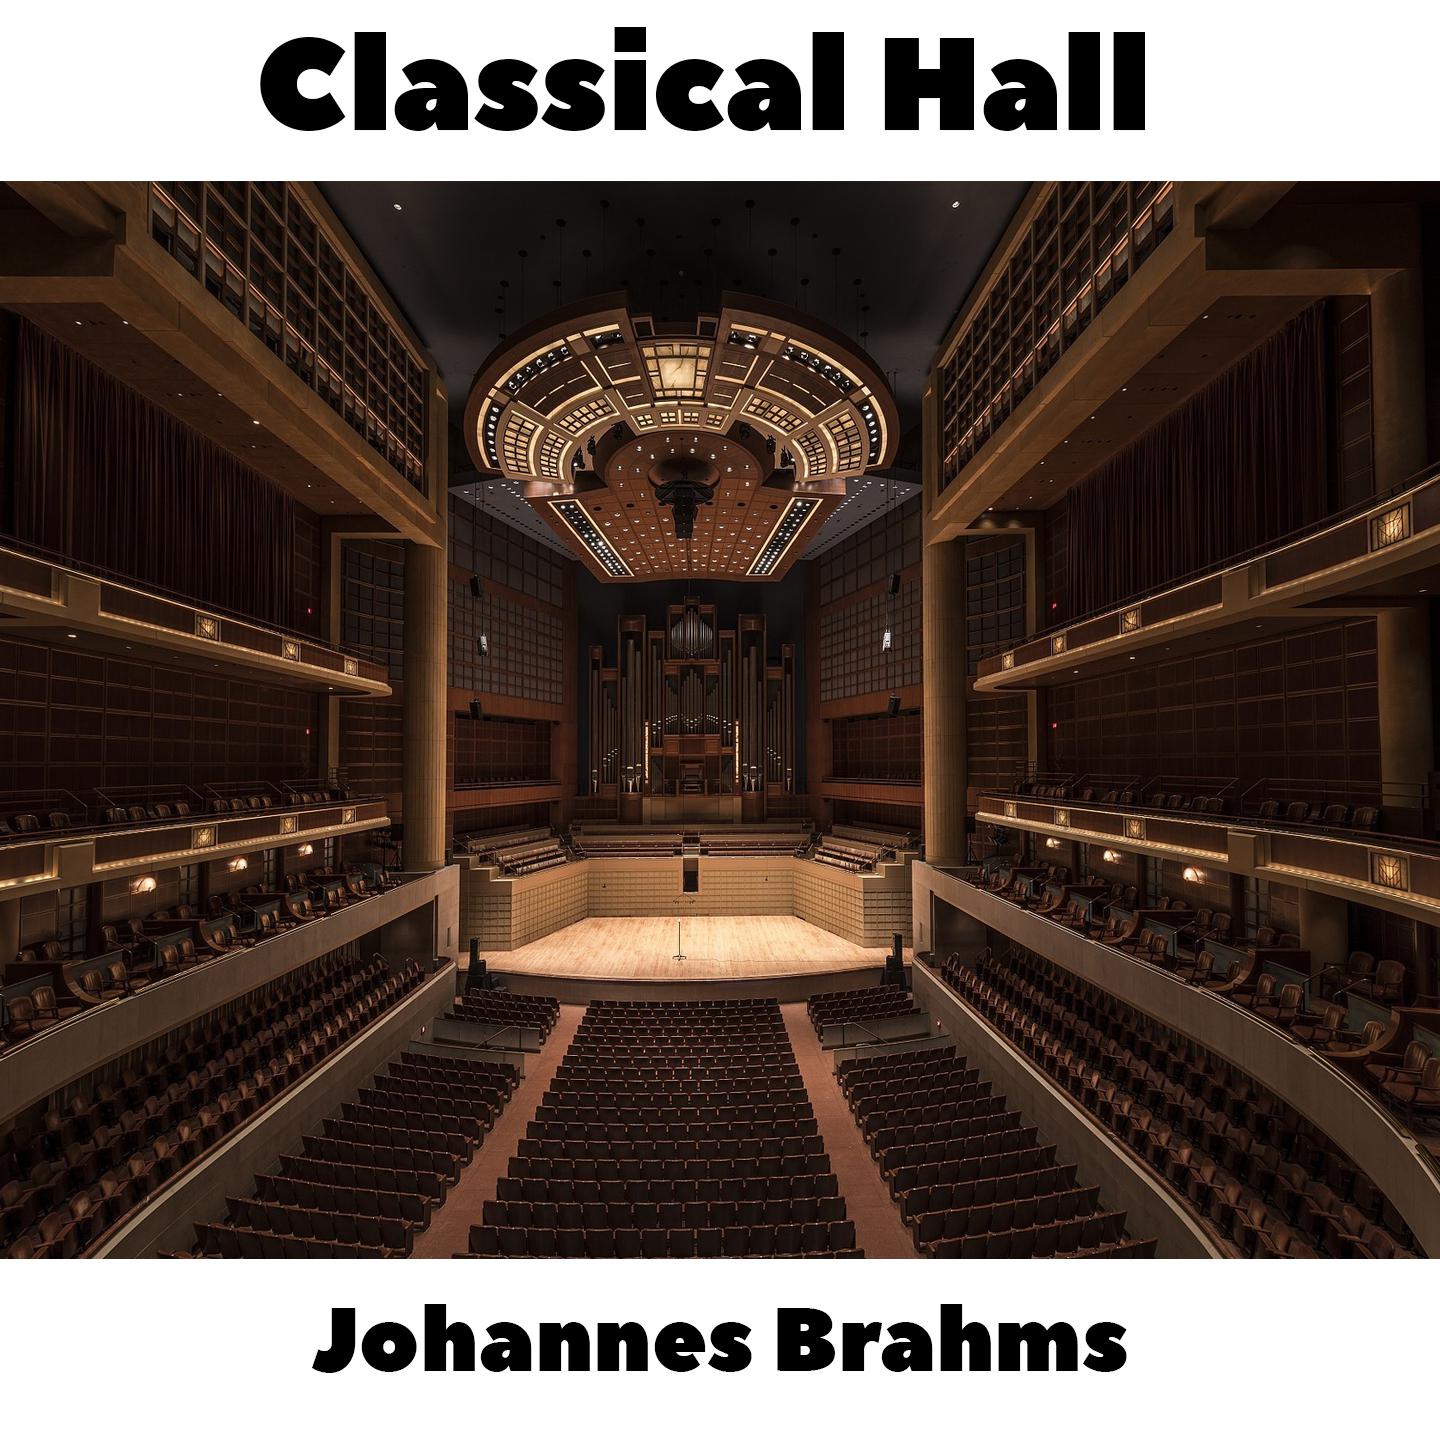 Johannes Brahms -  16 Waltzes, Op.39 - No.2 in E